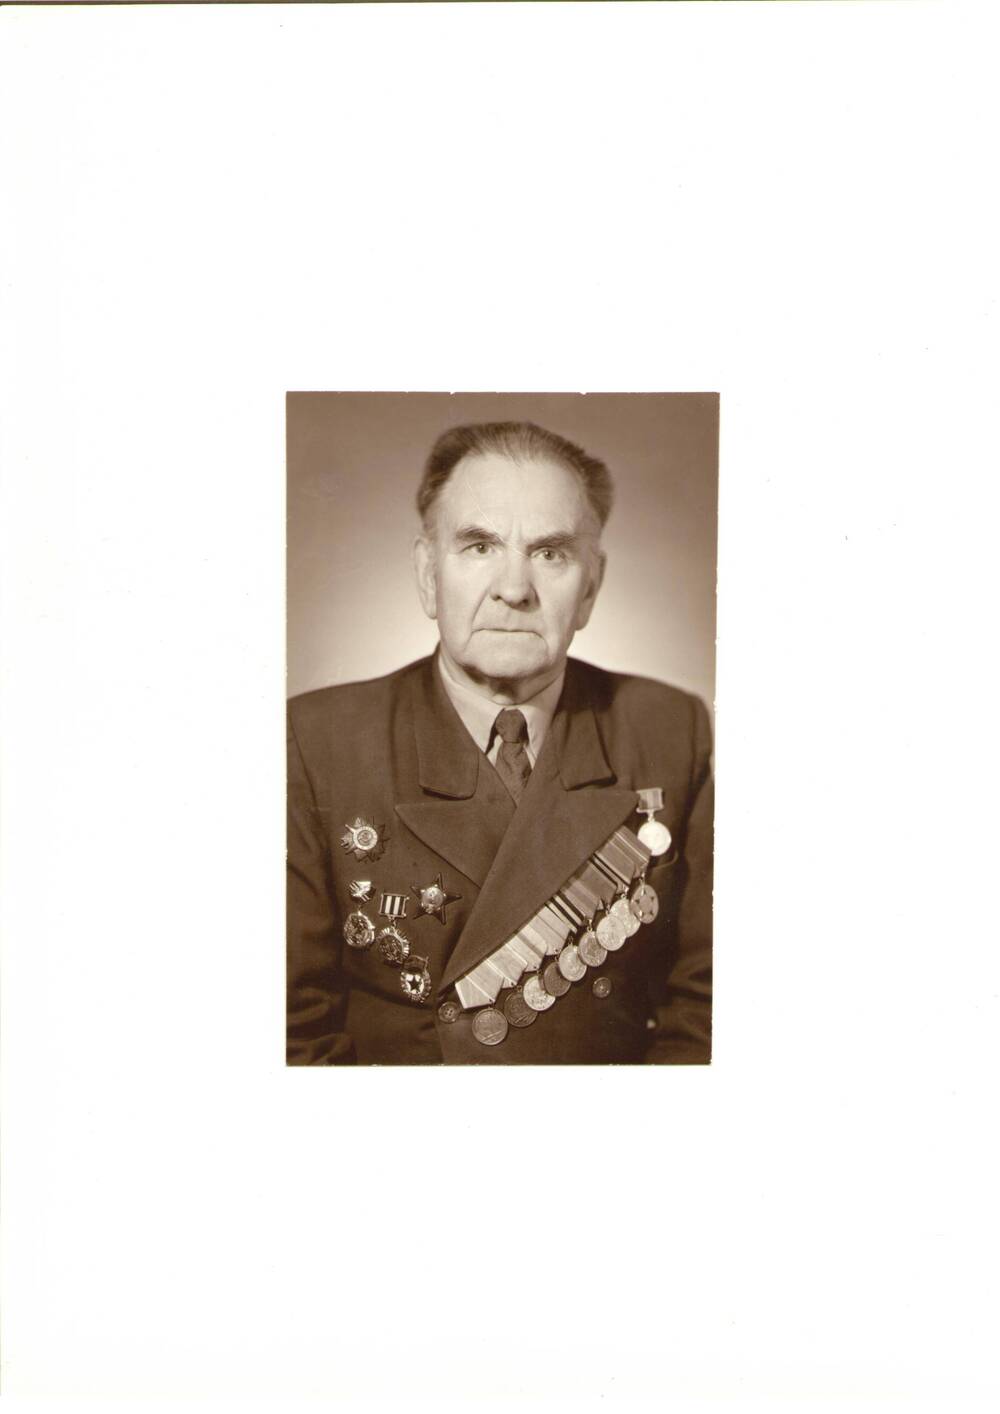 Фото коричнево-белое, поясное Лебедева В. И. – ветерана 21 (6 гвардейской) армии, подполковника. 1975